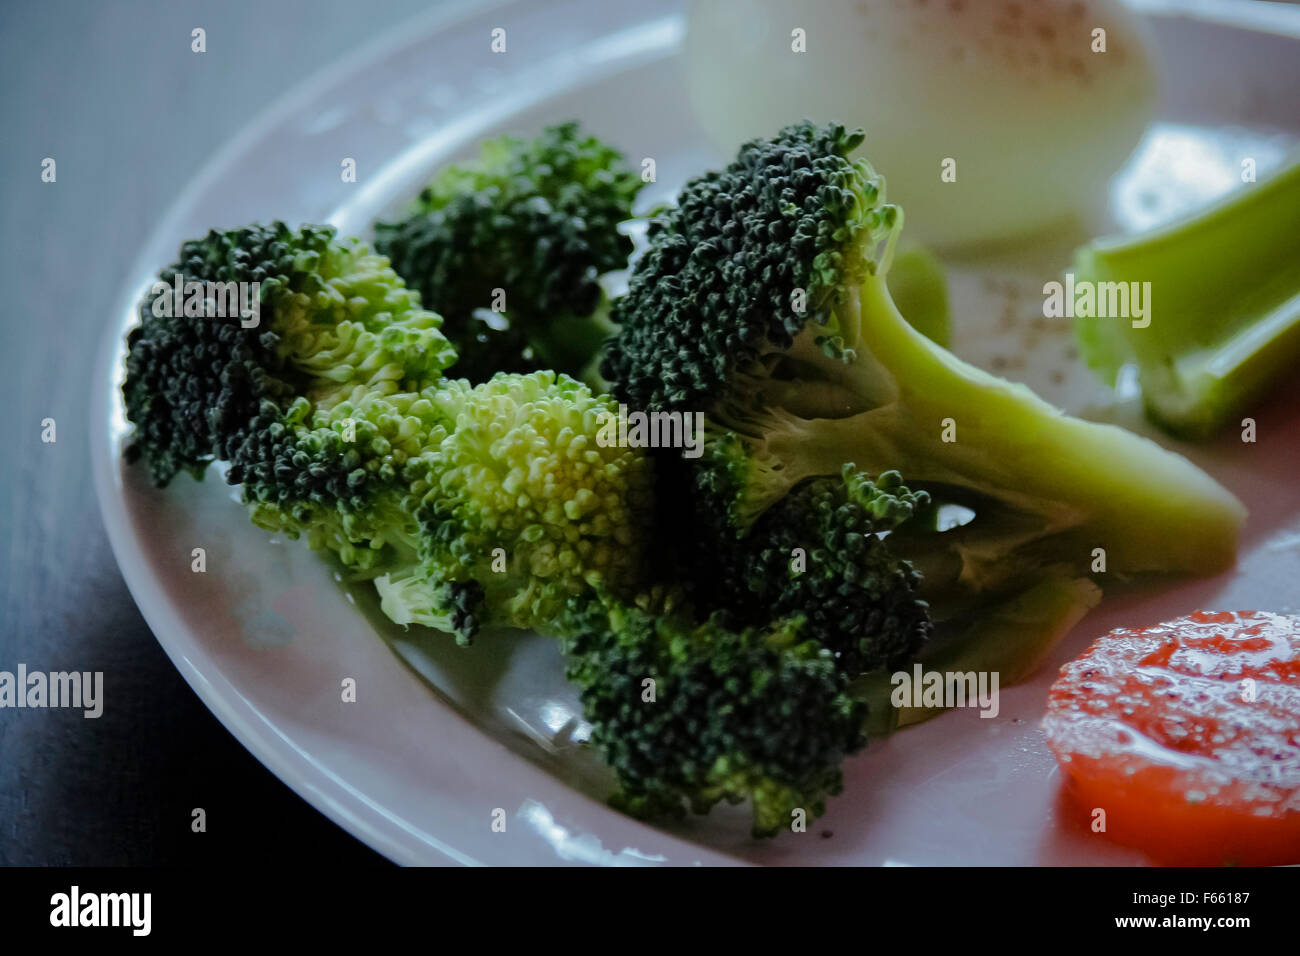 Frischen Brokkoli auf ein bläuliches grün Hintergrund mit anderen gesunden Zutaten. low-key Beleuchtung, geringe Tiefenschärfe Stockfoto